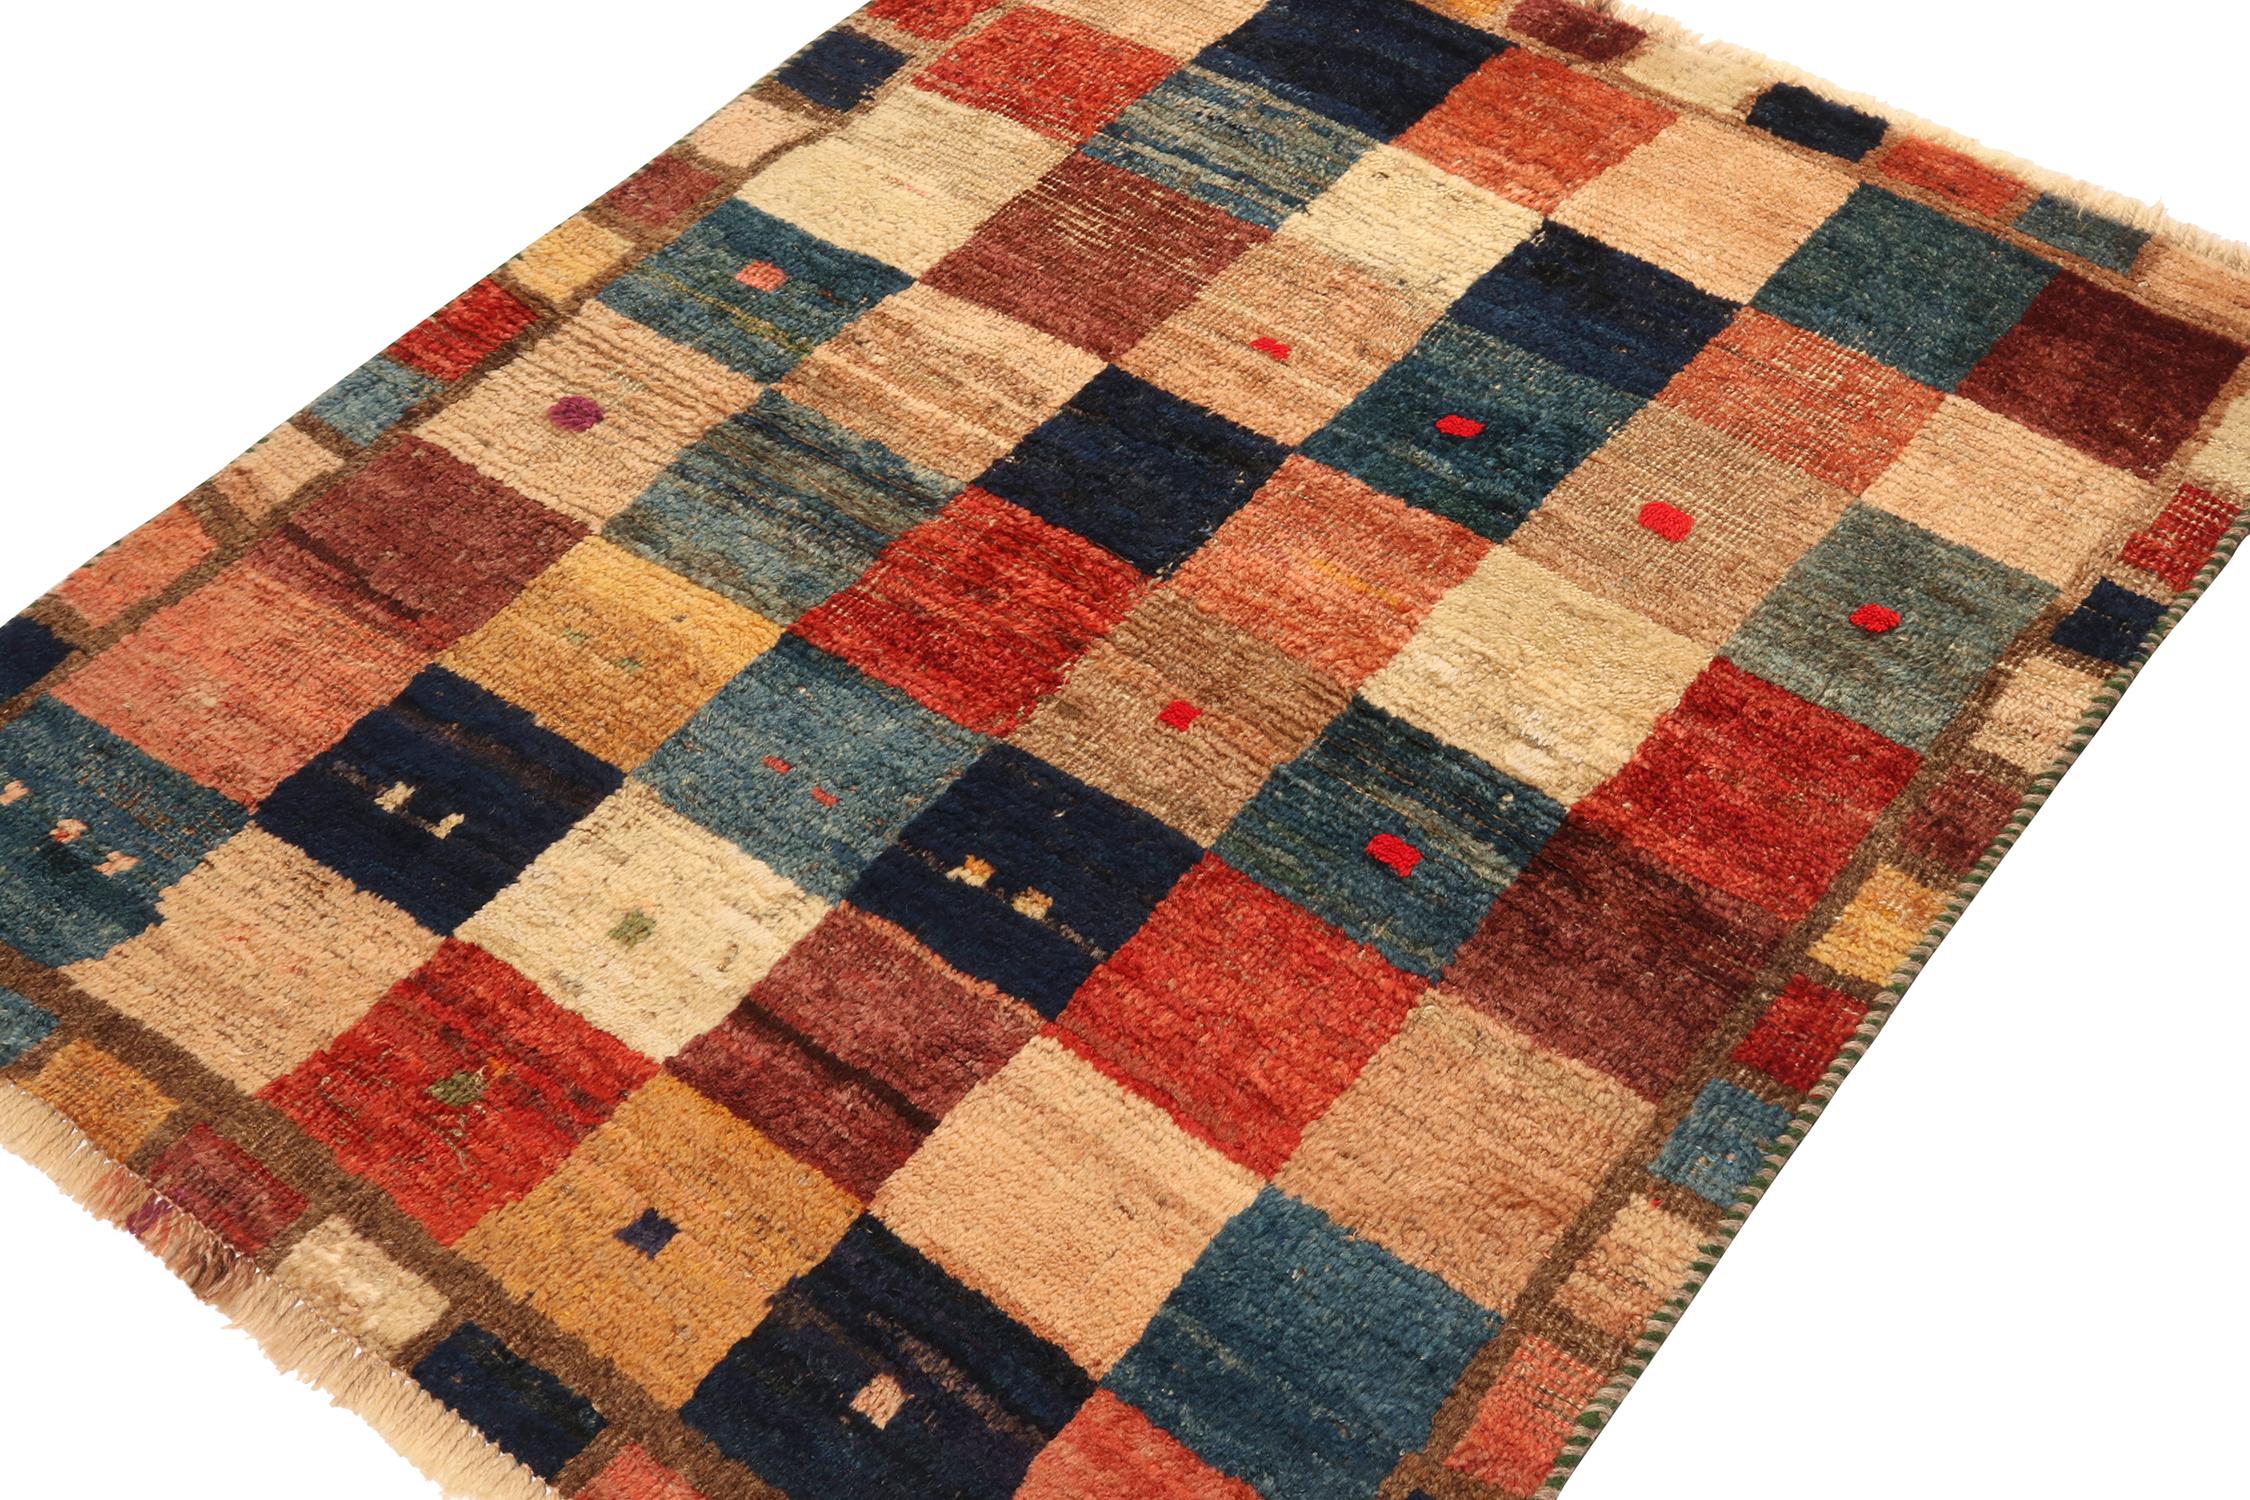 Ce tapis vintage 3x4 persan Gabbeh constitue une entrée splendide dans la collection de pièces tribales rares de Rug & Kilim. Noué à la main en laine vers 1950-1960.

Sur le design :

La pièce présente un motif géométrique ludique dans un jeu de